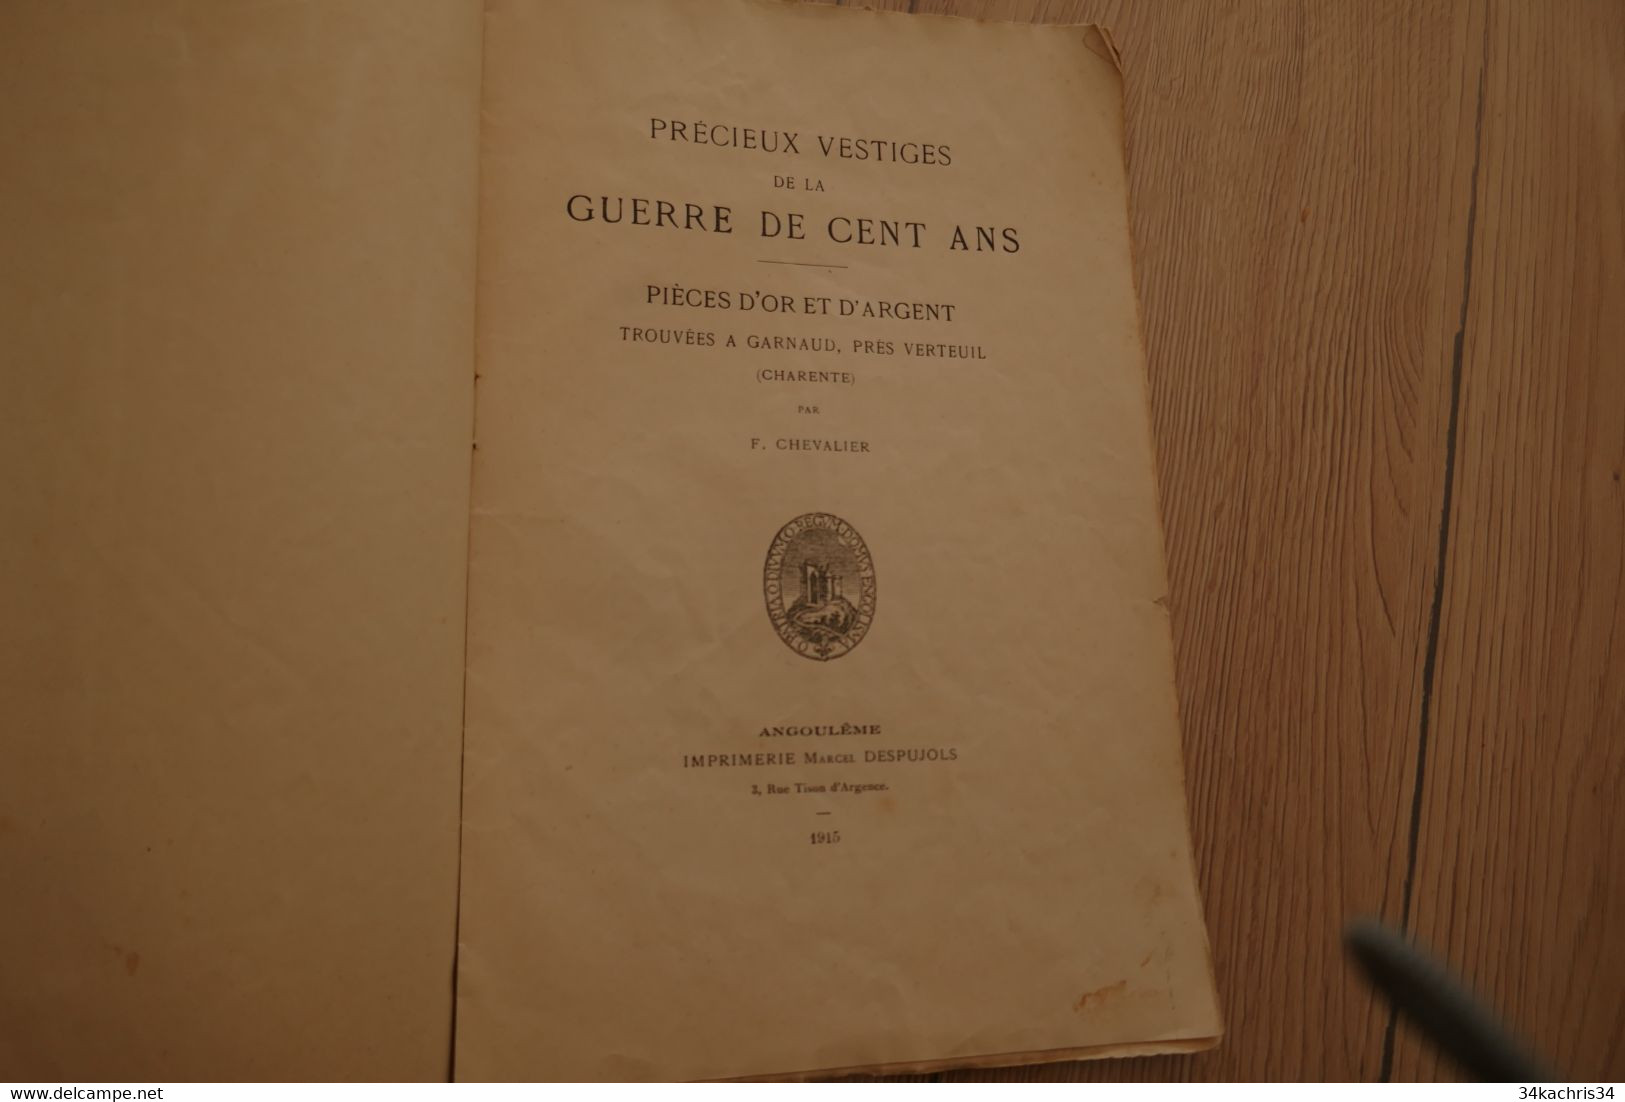 1915 Précieux Vestiges De La Guerre De 100 Ans Pièces D'or D'argent Trouvées à Garanaud Près Verteuil  F.Chevalier - Poitou-Charentes